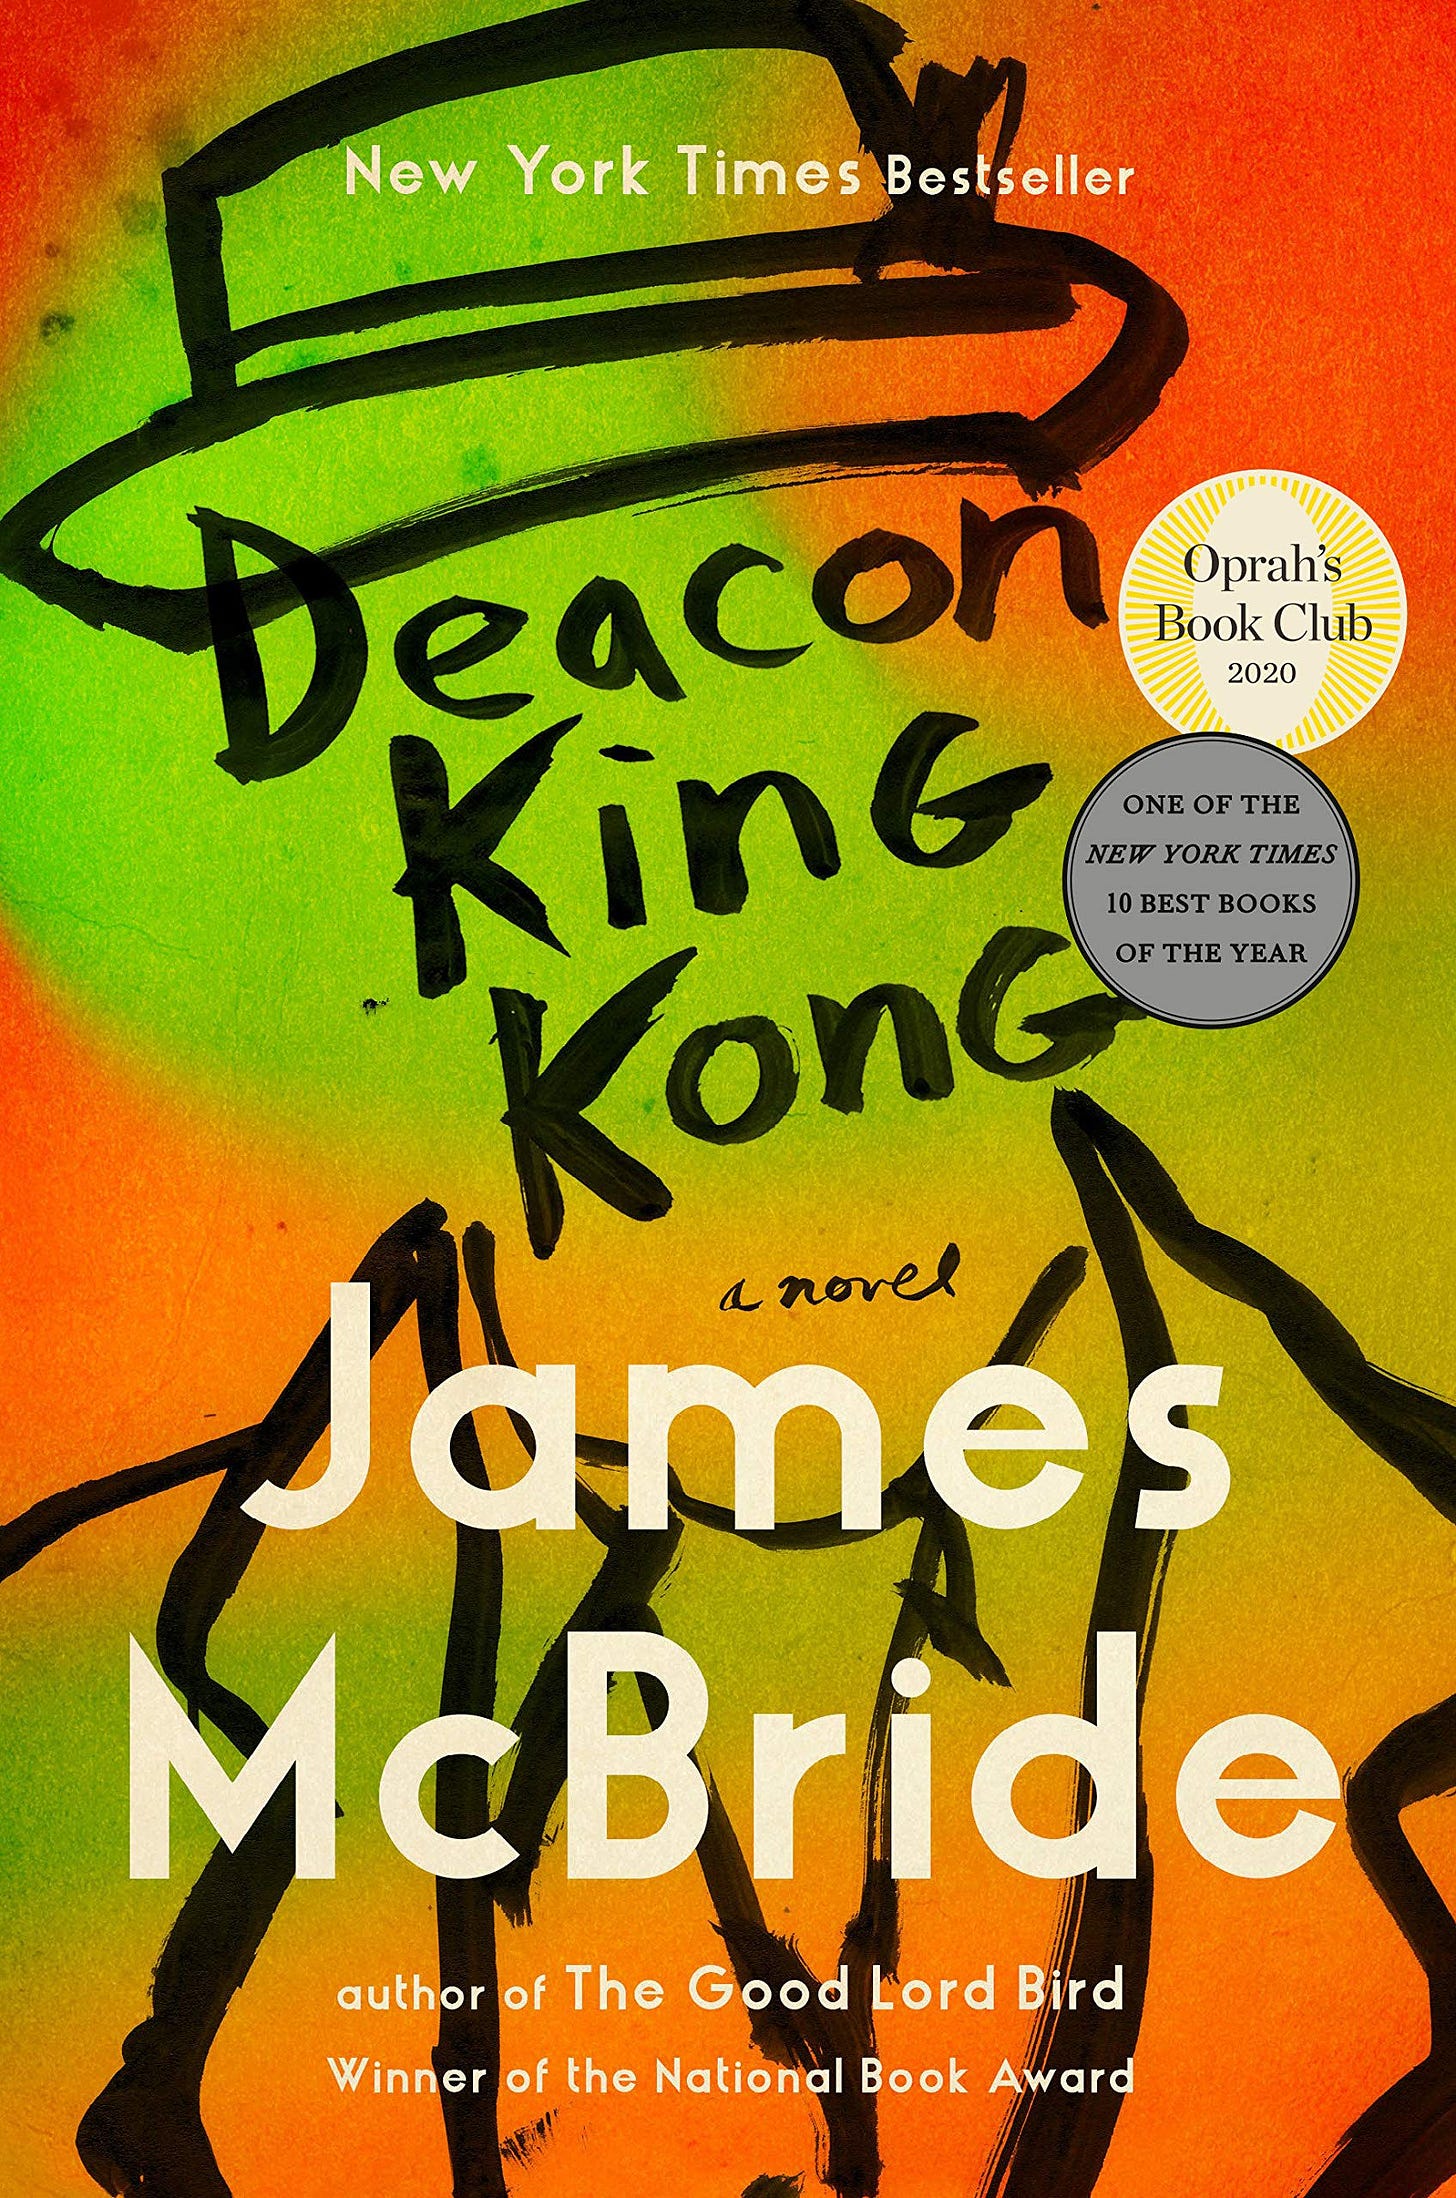 Amazon.com: Deacon King Kong: A Novel: 9780735216723: McBride, James: Books